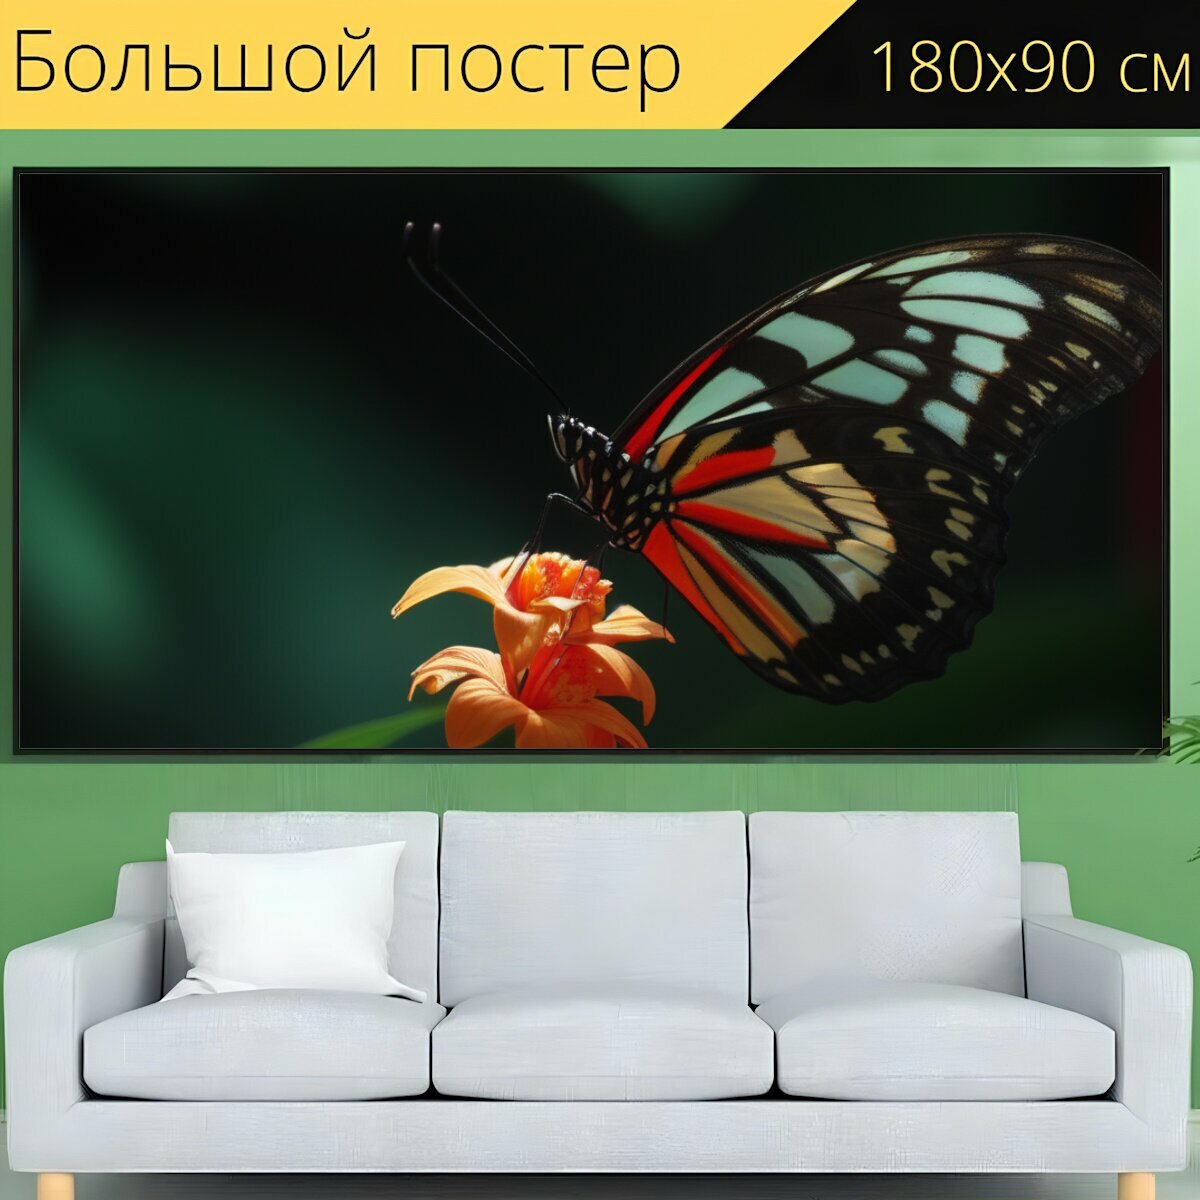 Большой постер для любителей бабочек "Природа, бабочки, на цветке" 180 x 90 см. для интерьера на стену